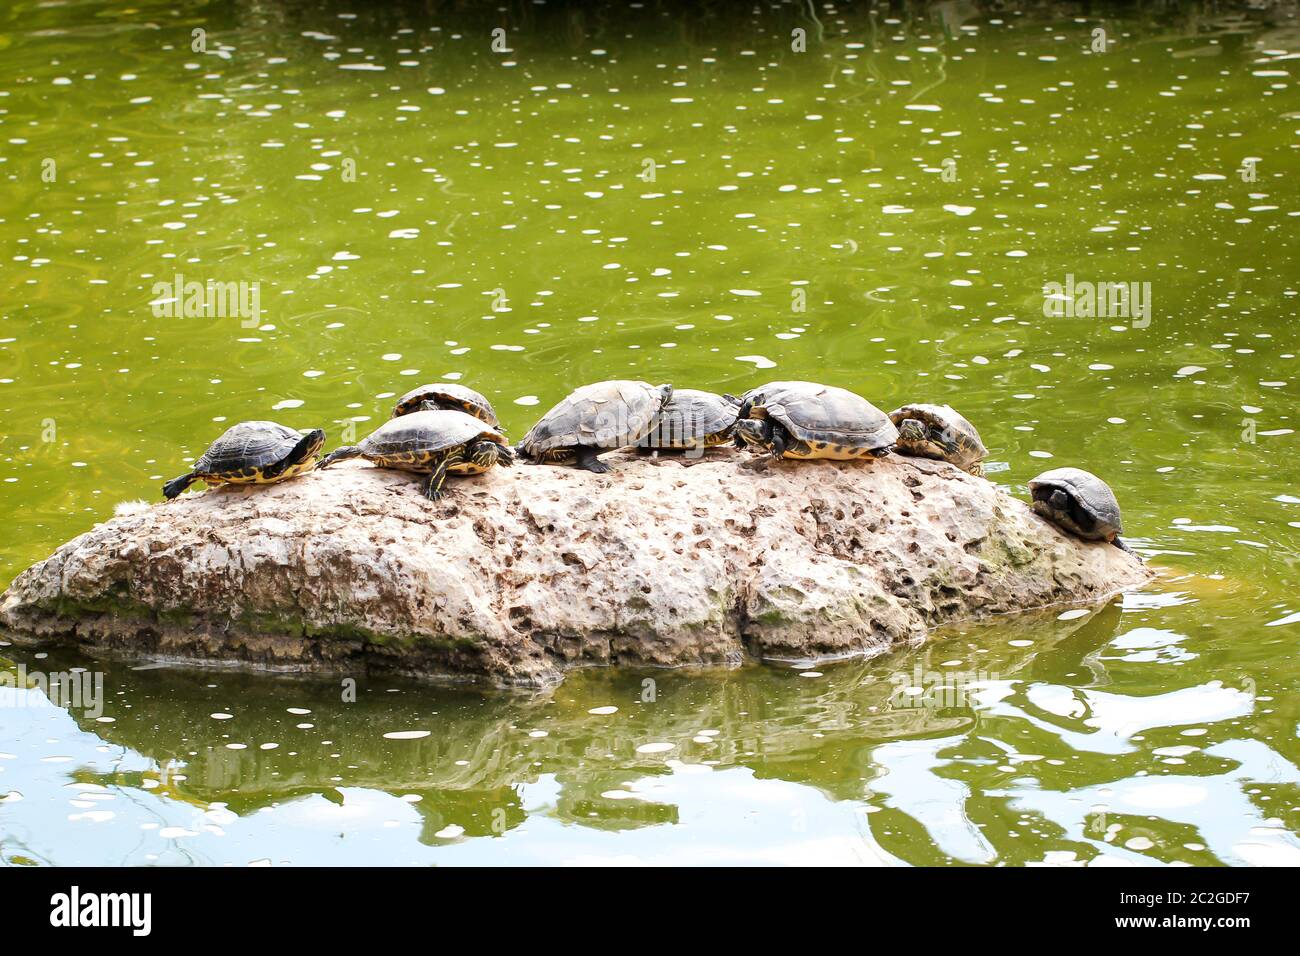 Muchas tortugas de agua en una piedra en el estanque Foto de stock